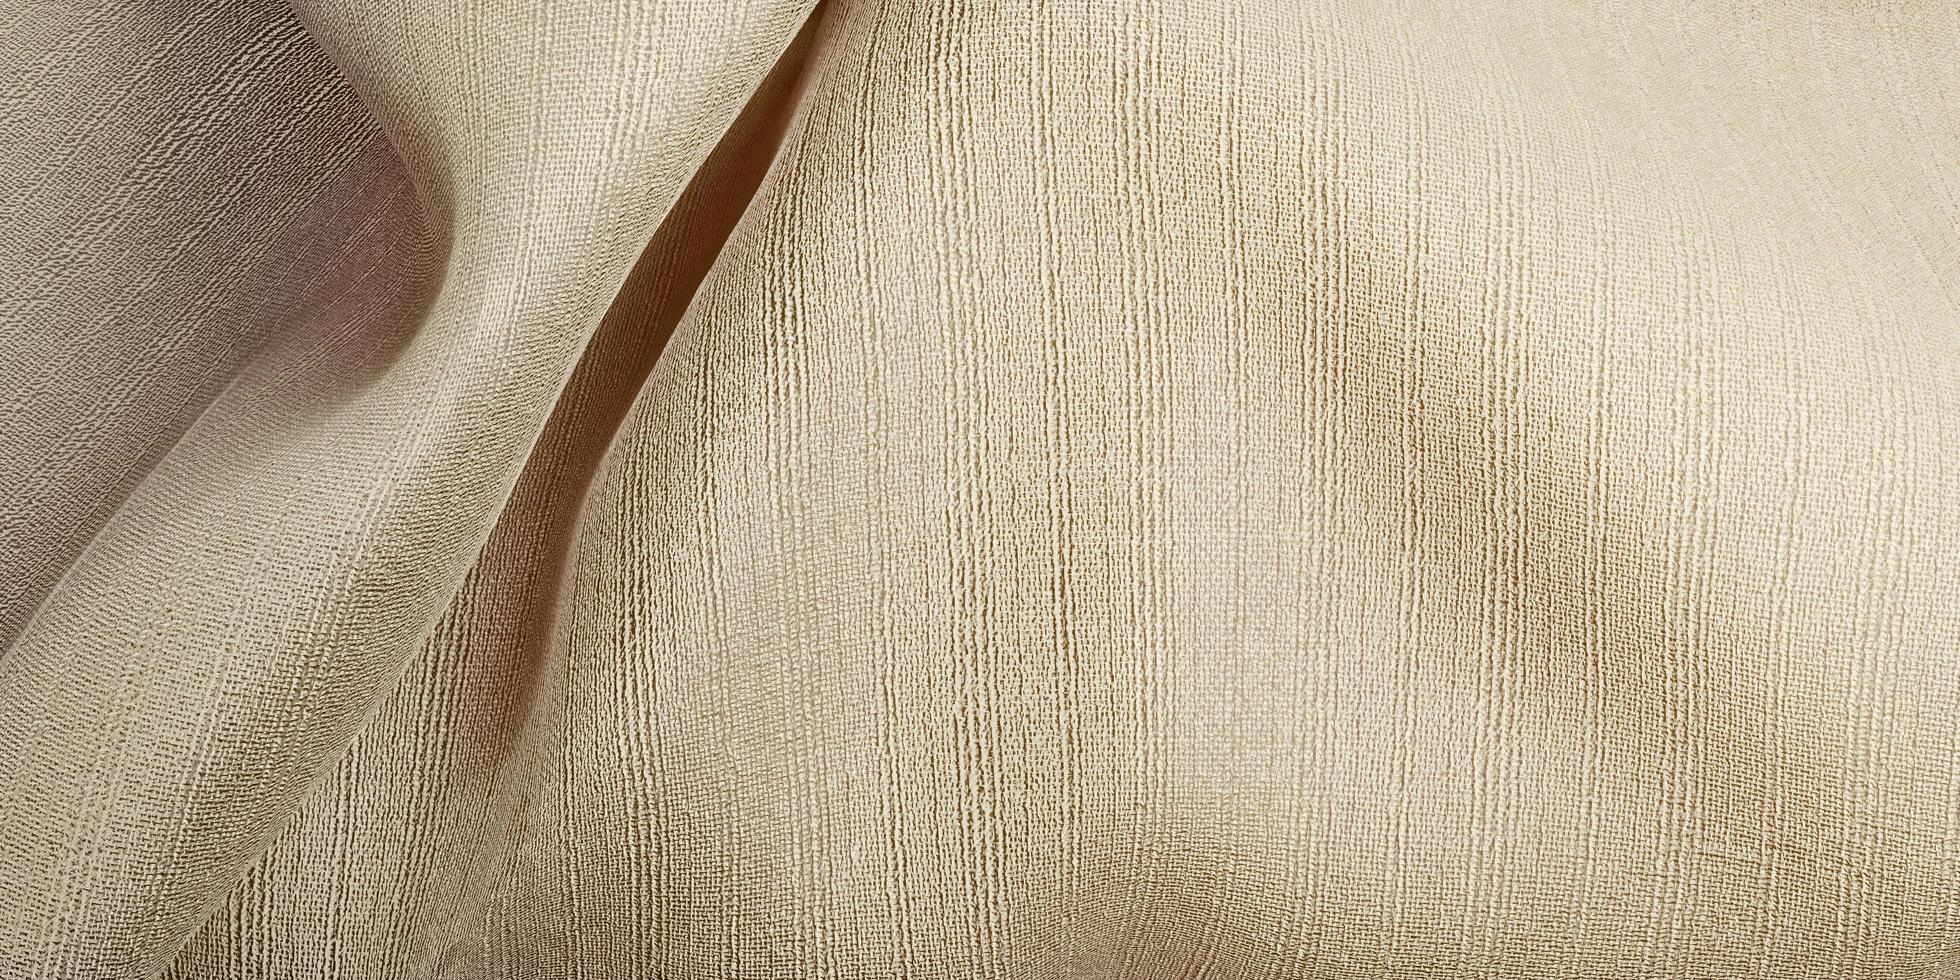 tissu d'organza de rideau de vague de texture de soie beige clair illustration 3d photo